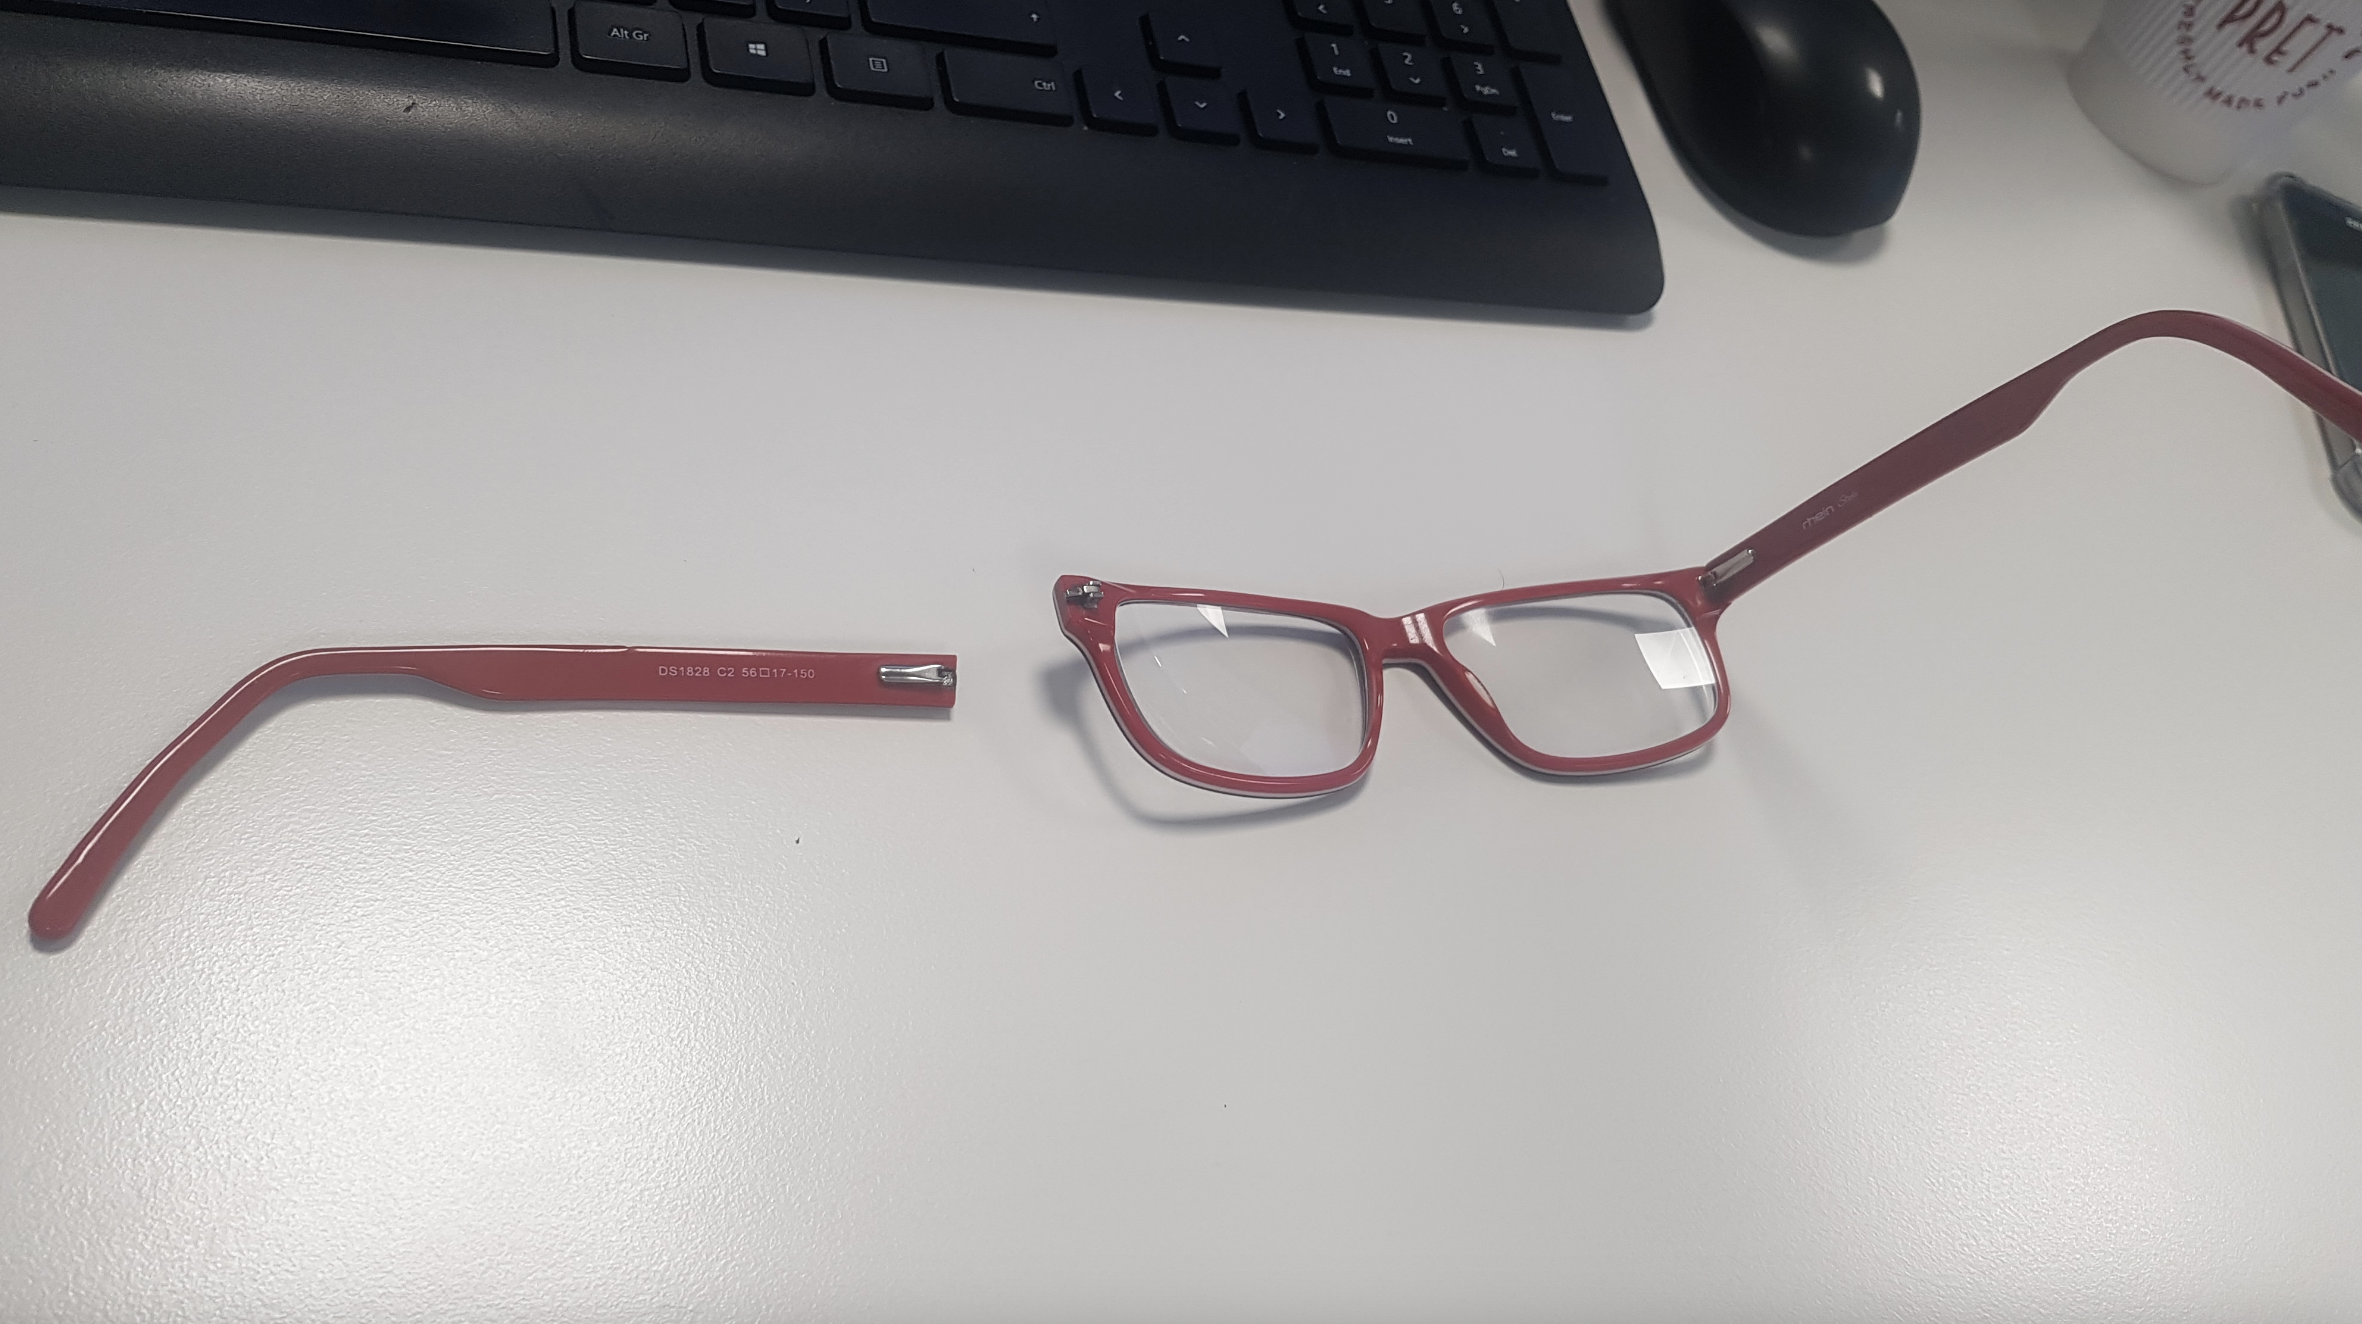 Broken glasses on desk